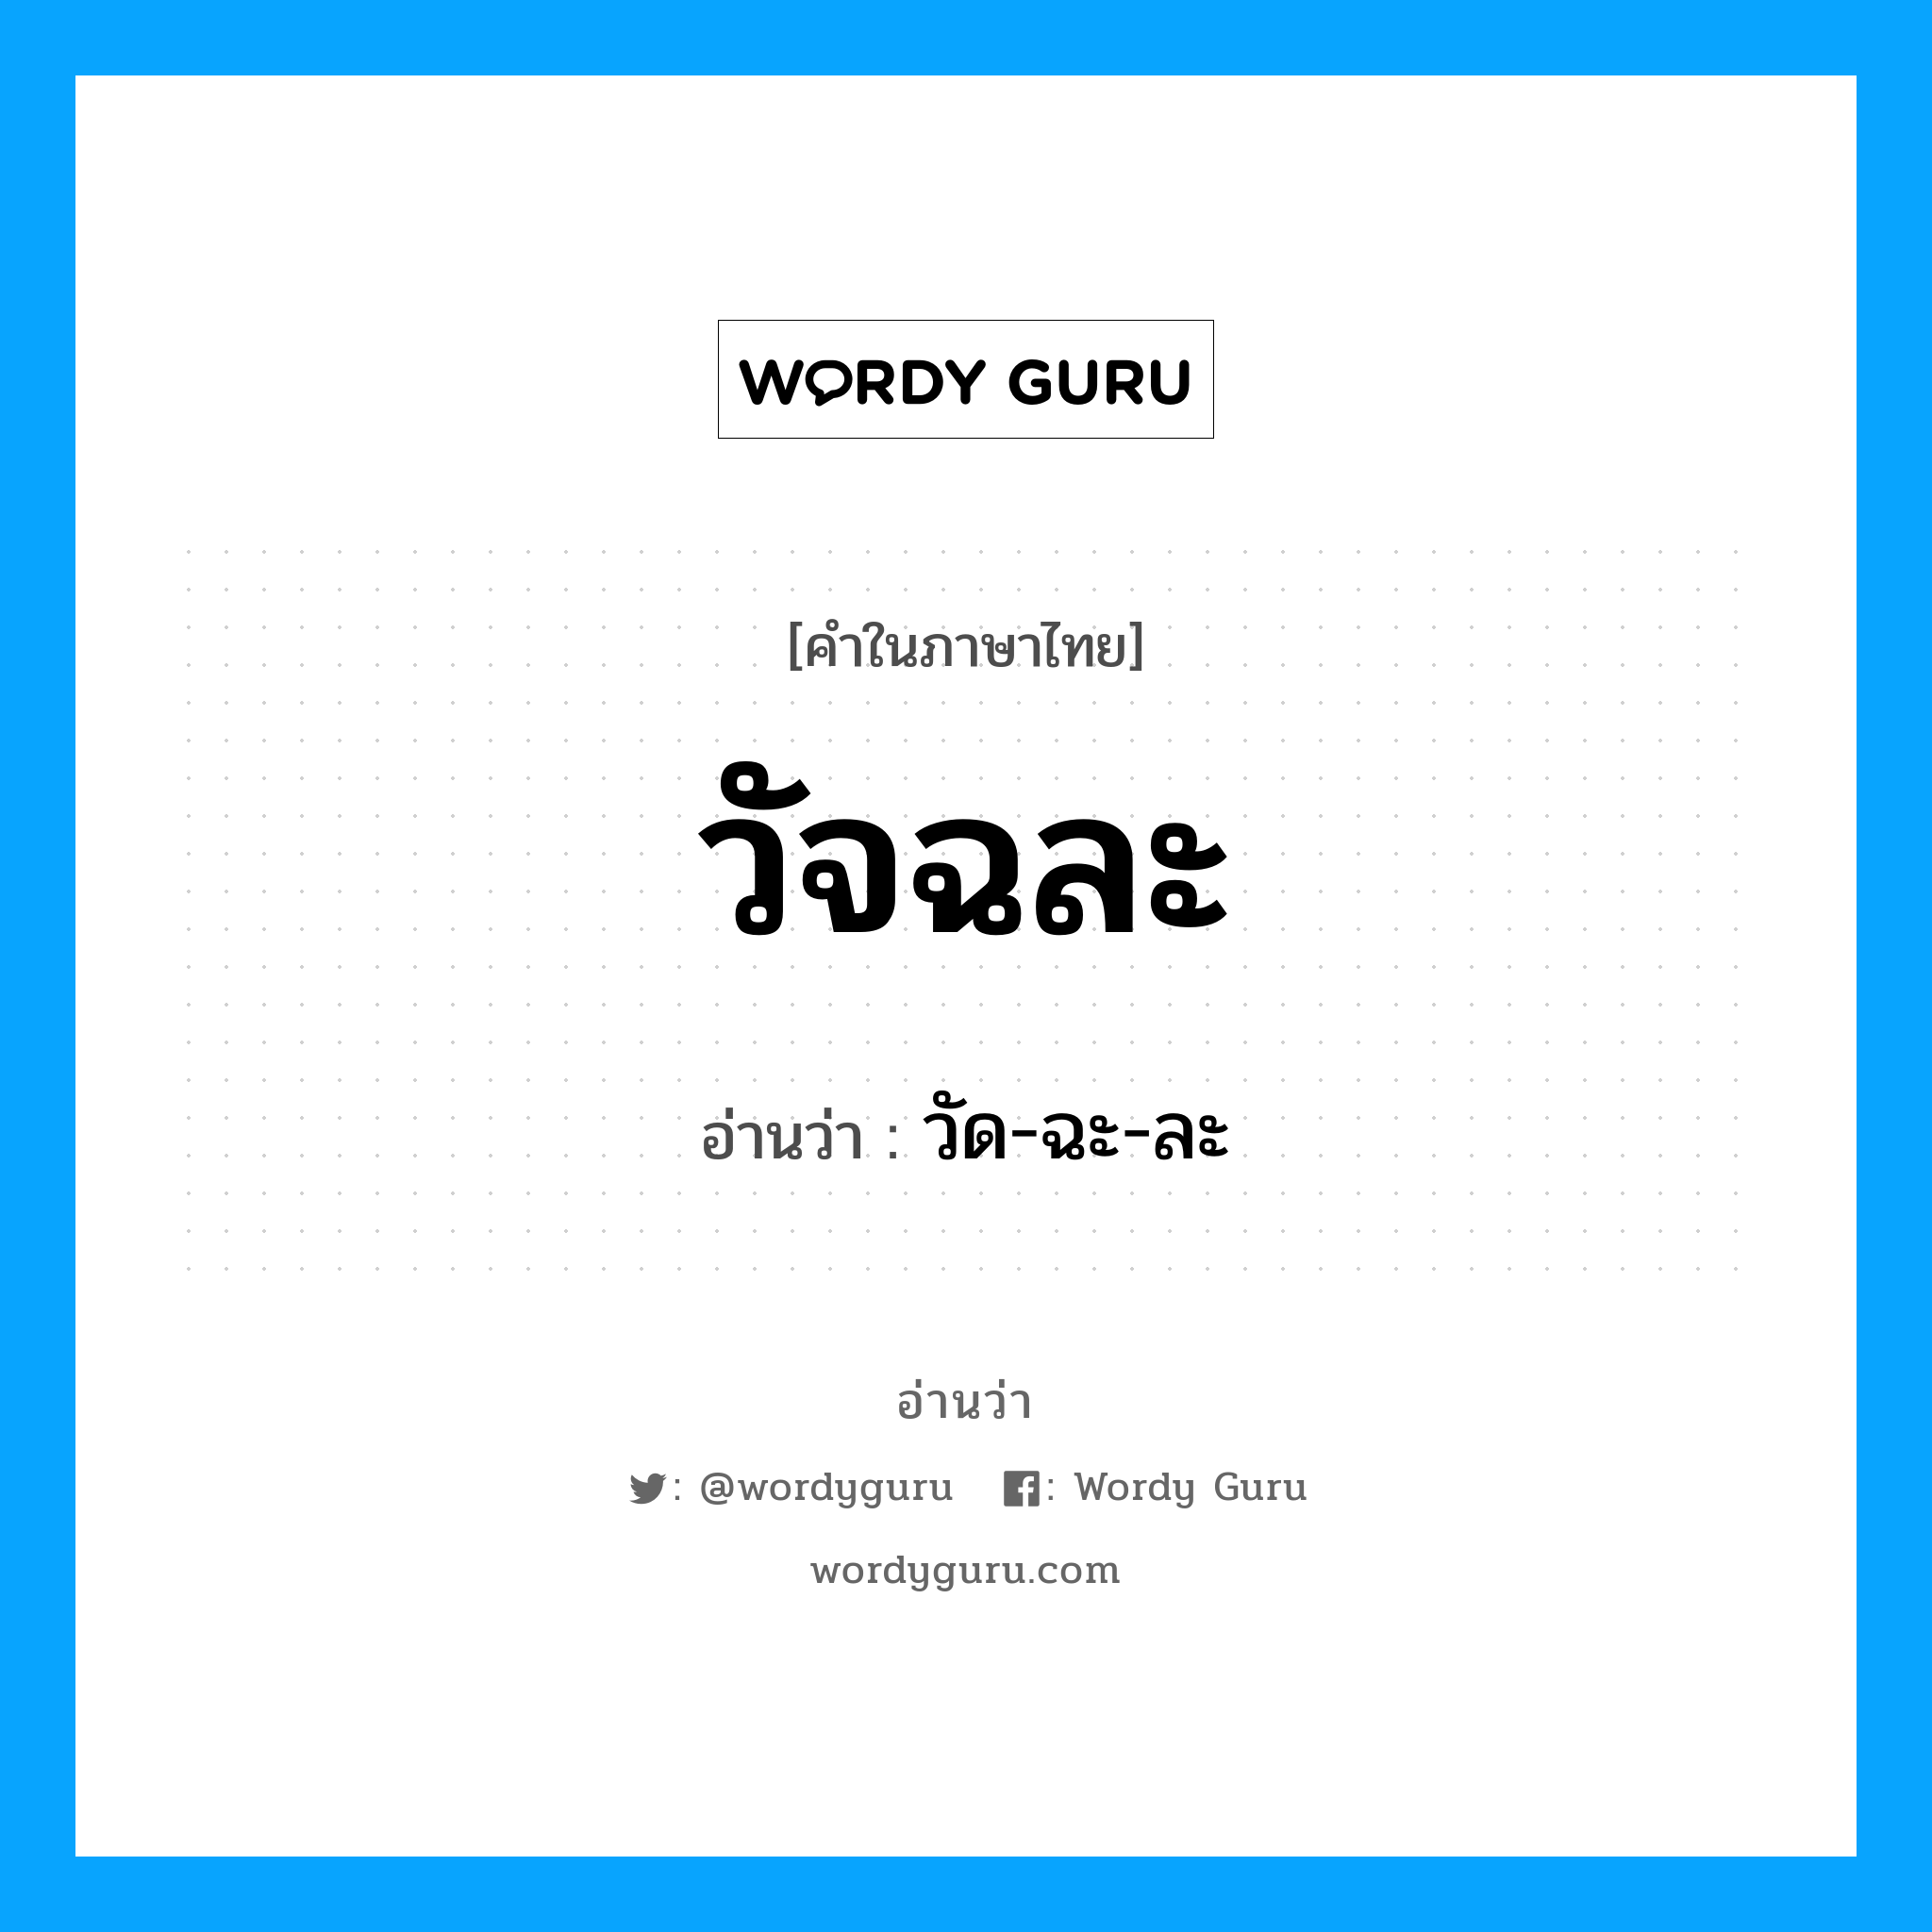 วัด-ฉะ-ละ เป็นคำอ่านของคำไหน?, คำในภาษาไทย วัด-ฉะ-ละ อ่านว่า วัจฉละ